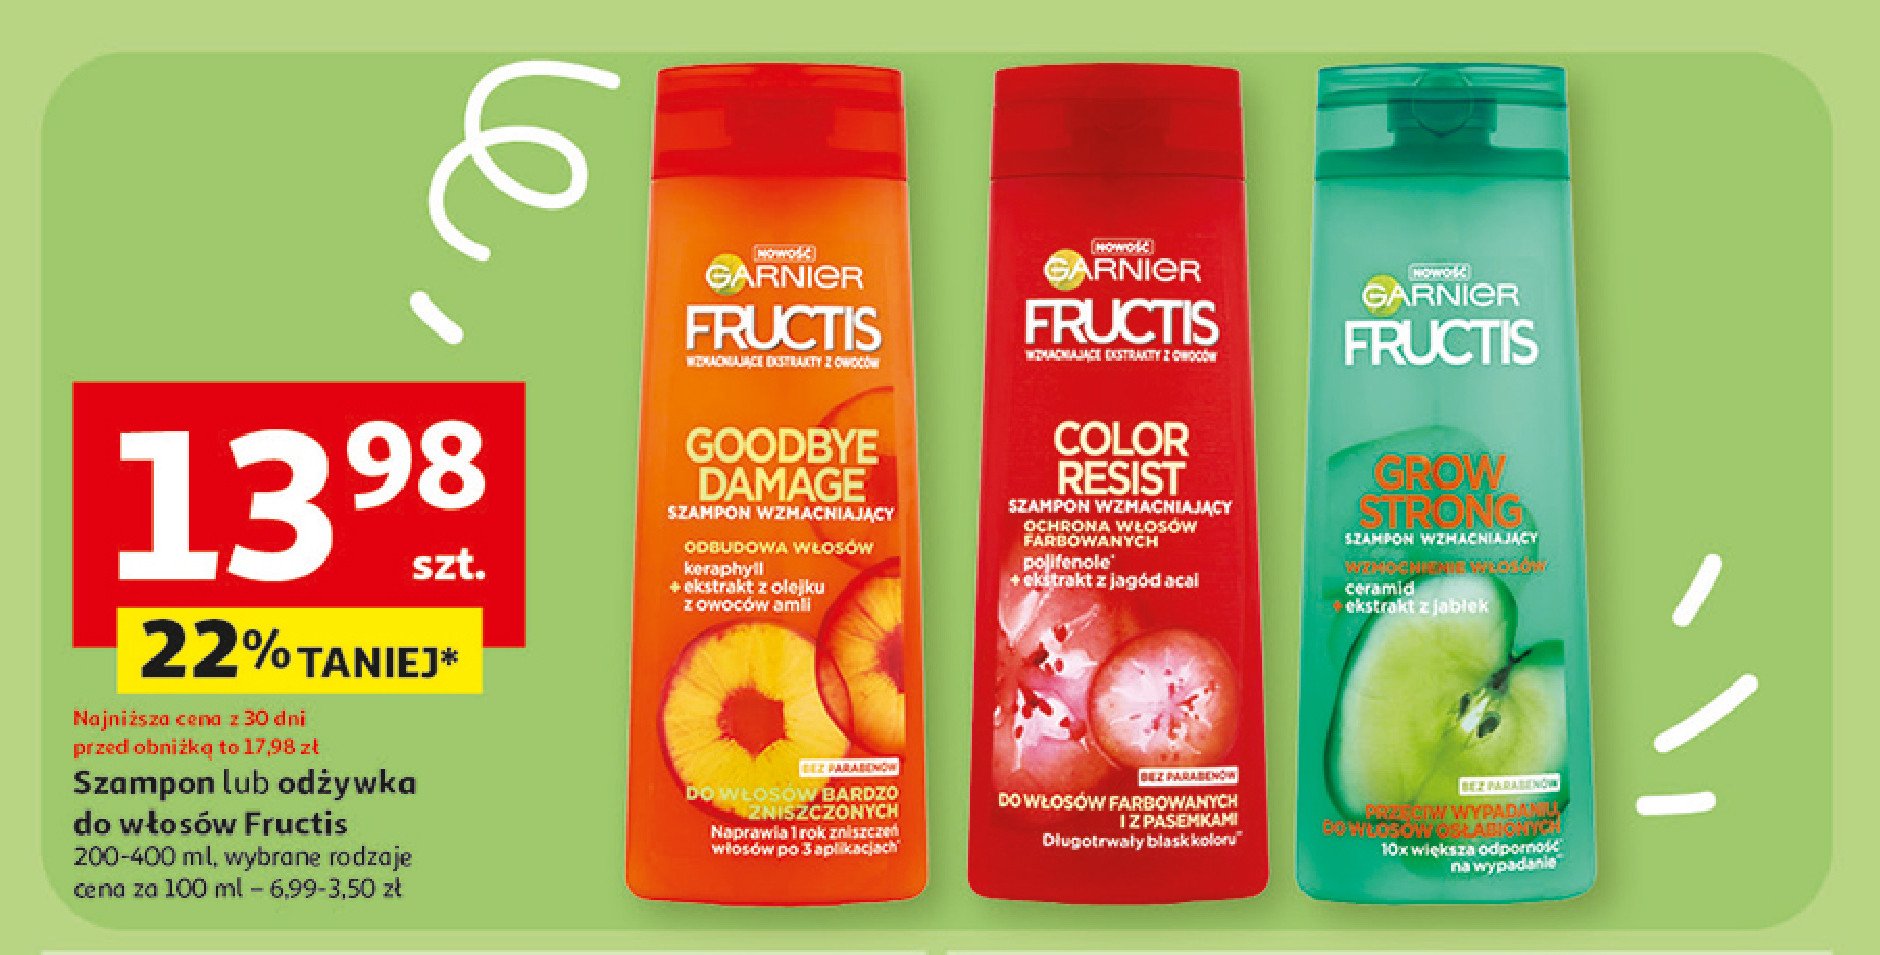 Szampon wzmacniający do włosów farbowanych i z pasemkami Fructis promocja